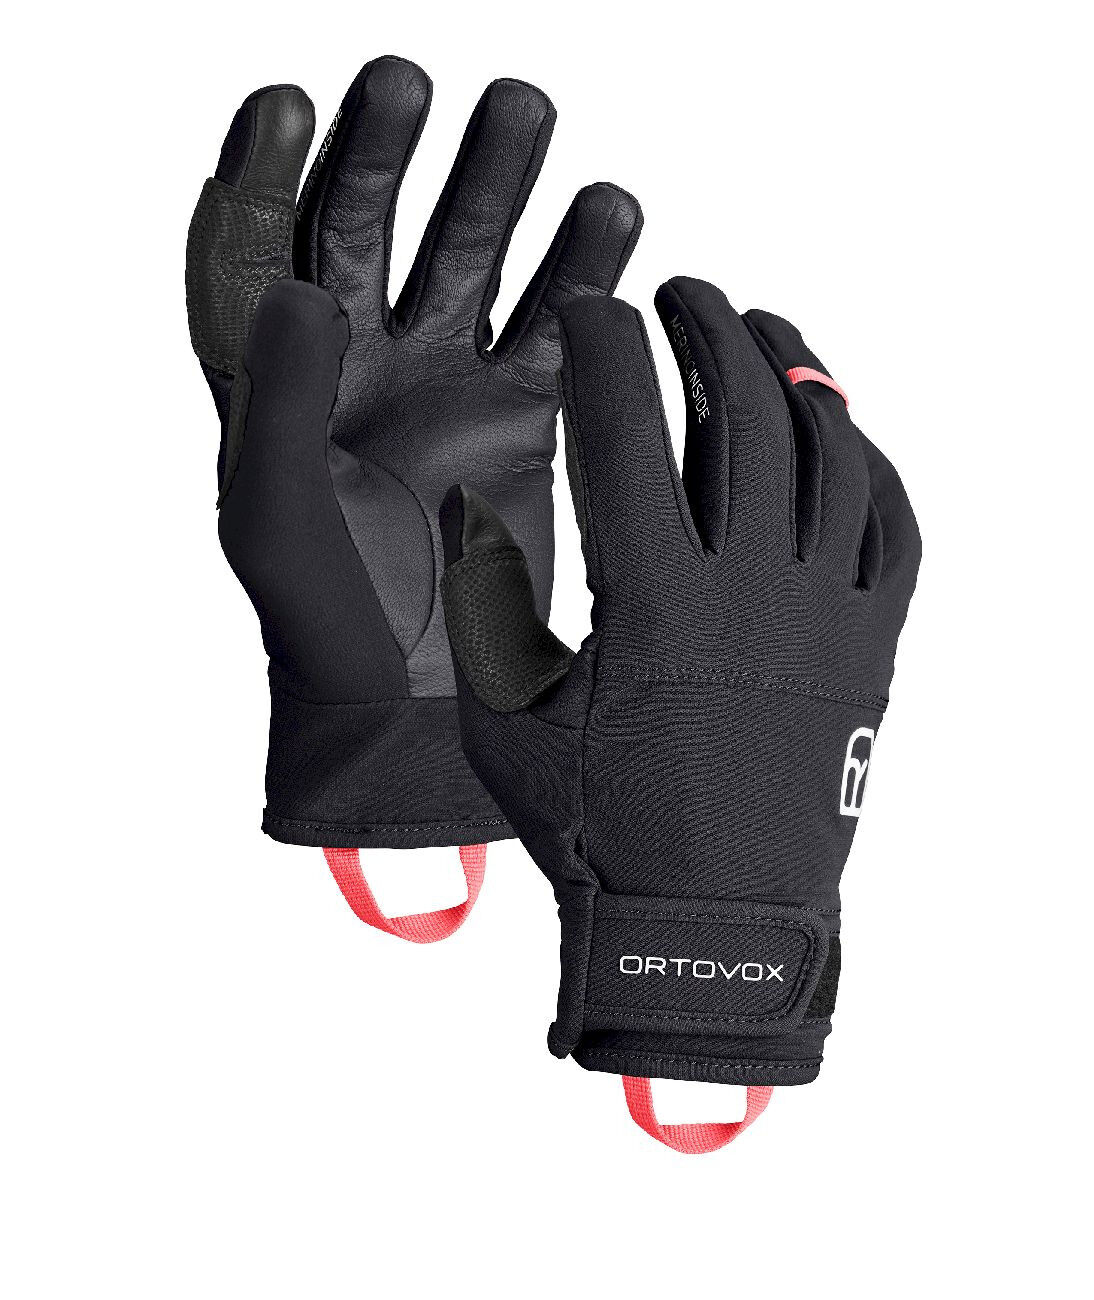 Ortovox Tour Light Glove - DámskéLyžařské rukavice